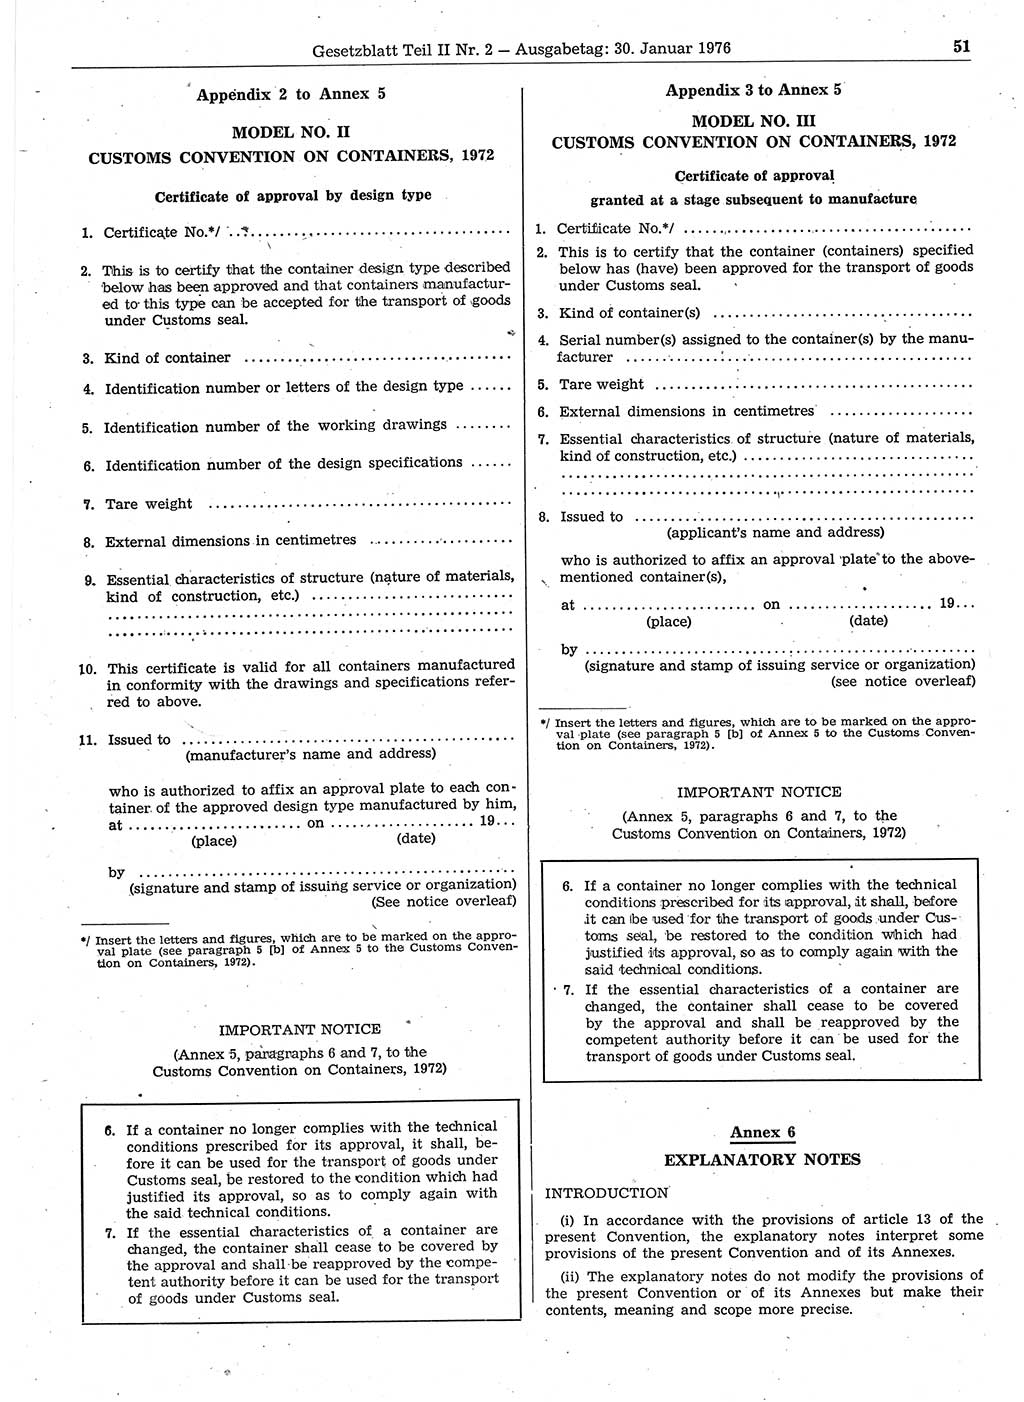 Gesetzblatt (GBl.) der Deutschen Demokratischen Republik (DDR) Teil ⅠⅠ 1976, Seite 51 (GBl. DDR ⅠⅠ 1976, S. 51)